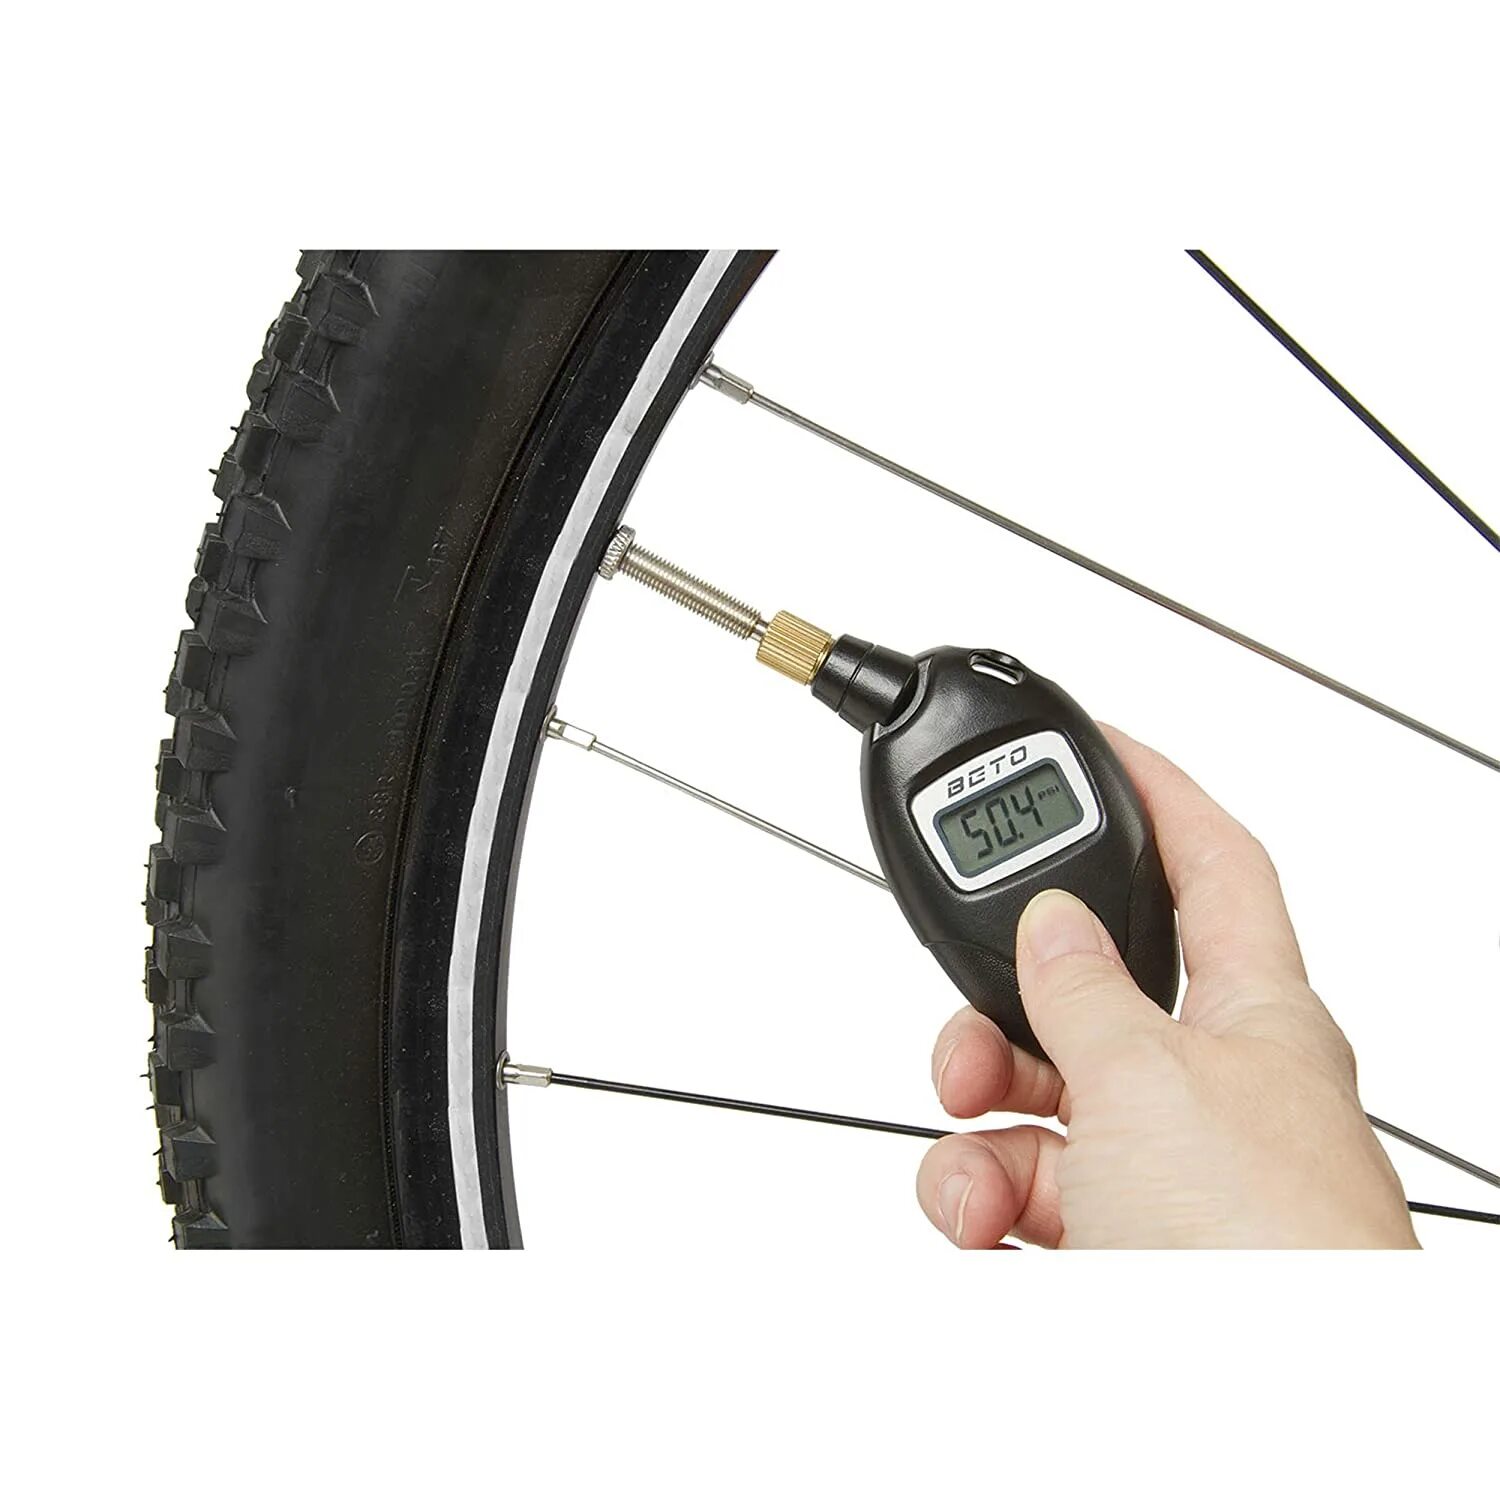 Сколько атмосфер в велосипедном колесе. Цифровой манометр Digital Pressure Gauge. Манометр 160bar. Велосипедный насос Beto 2 way. Цифровой манометр для велосипеда.